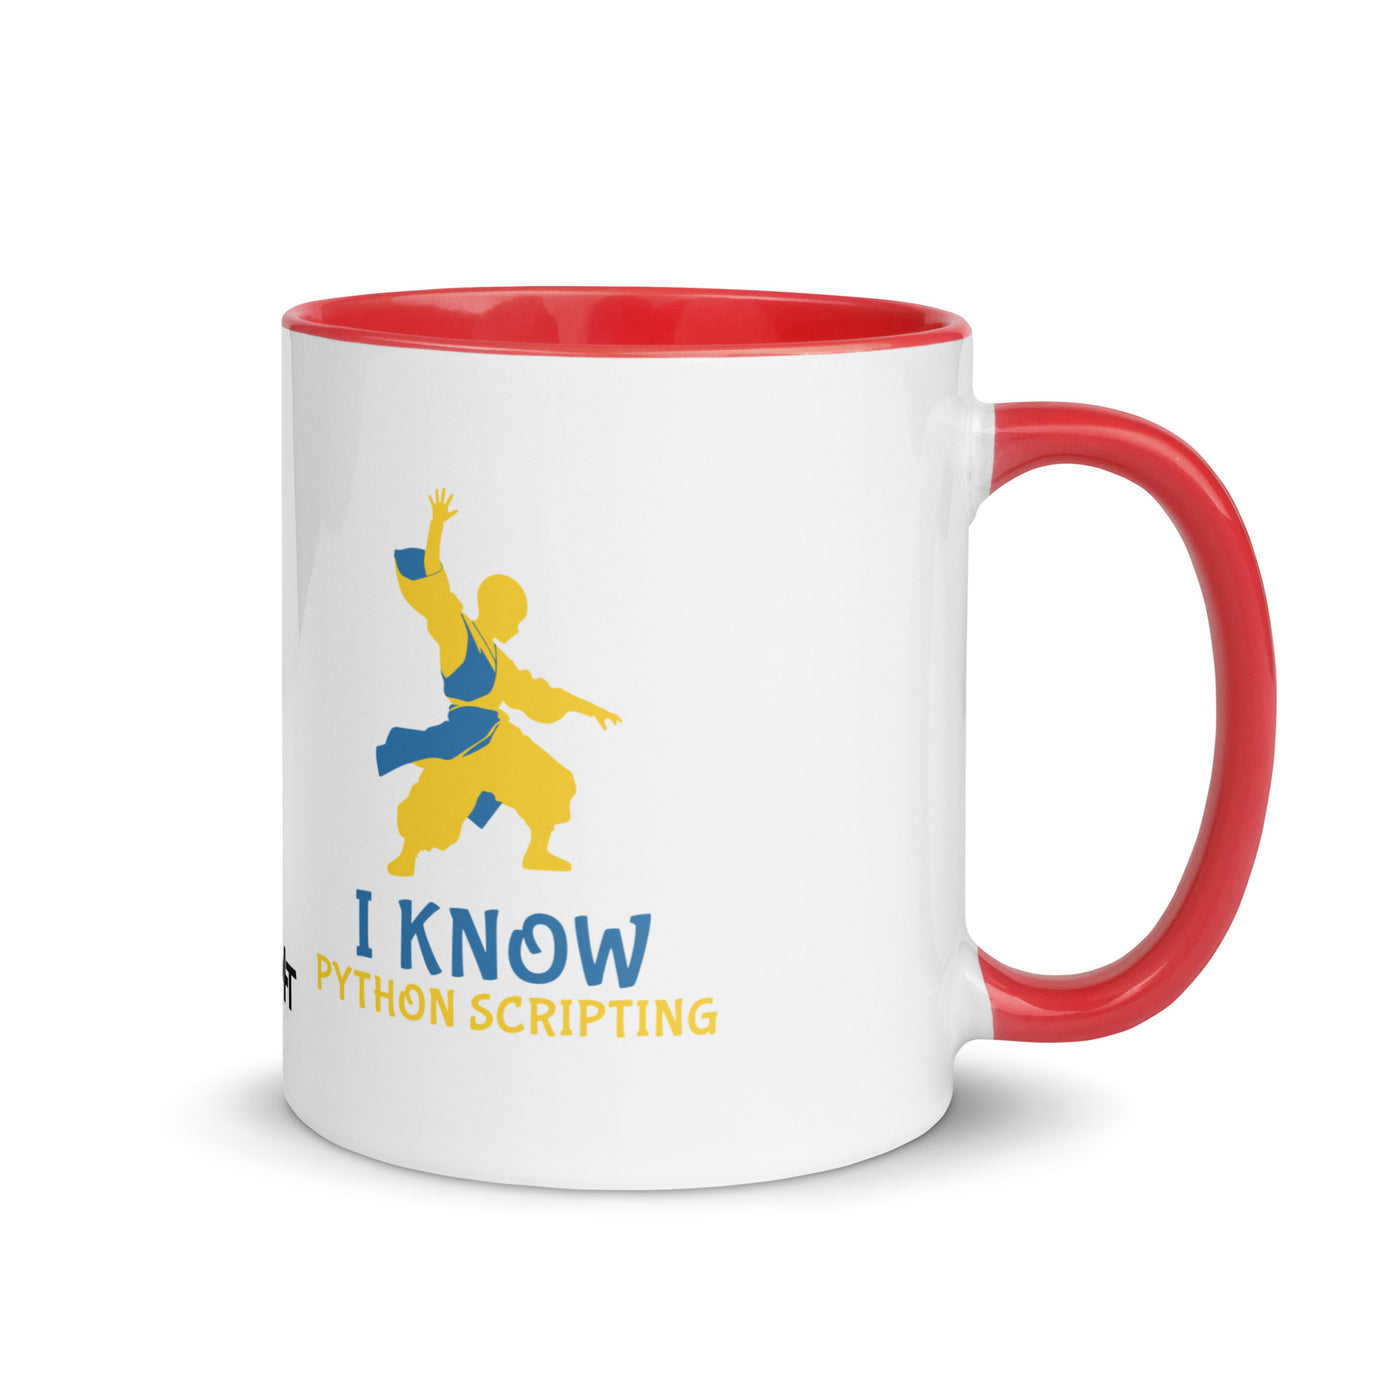 I Know Python Scripting - Mug with Color Inside